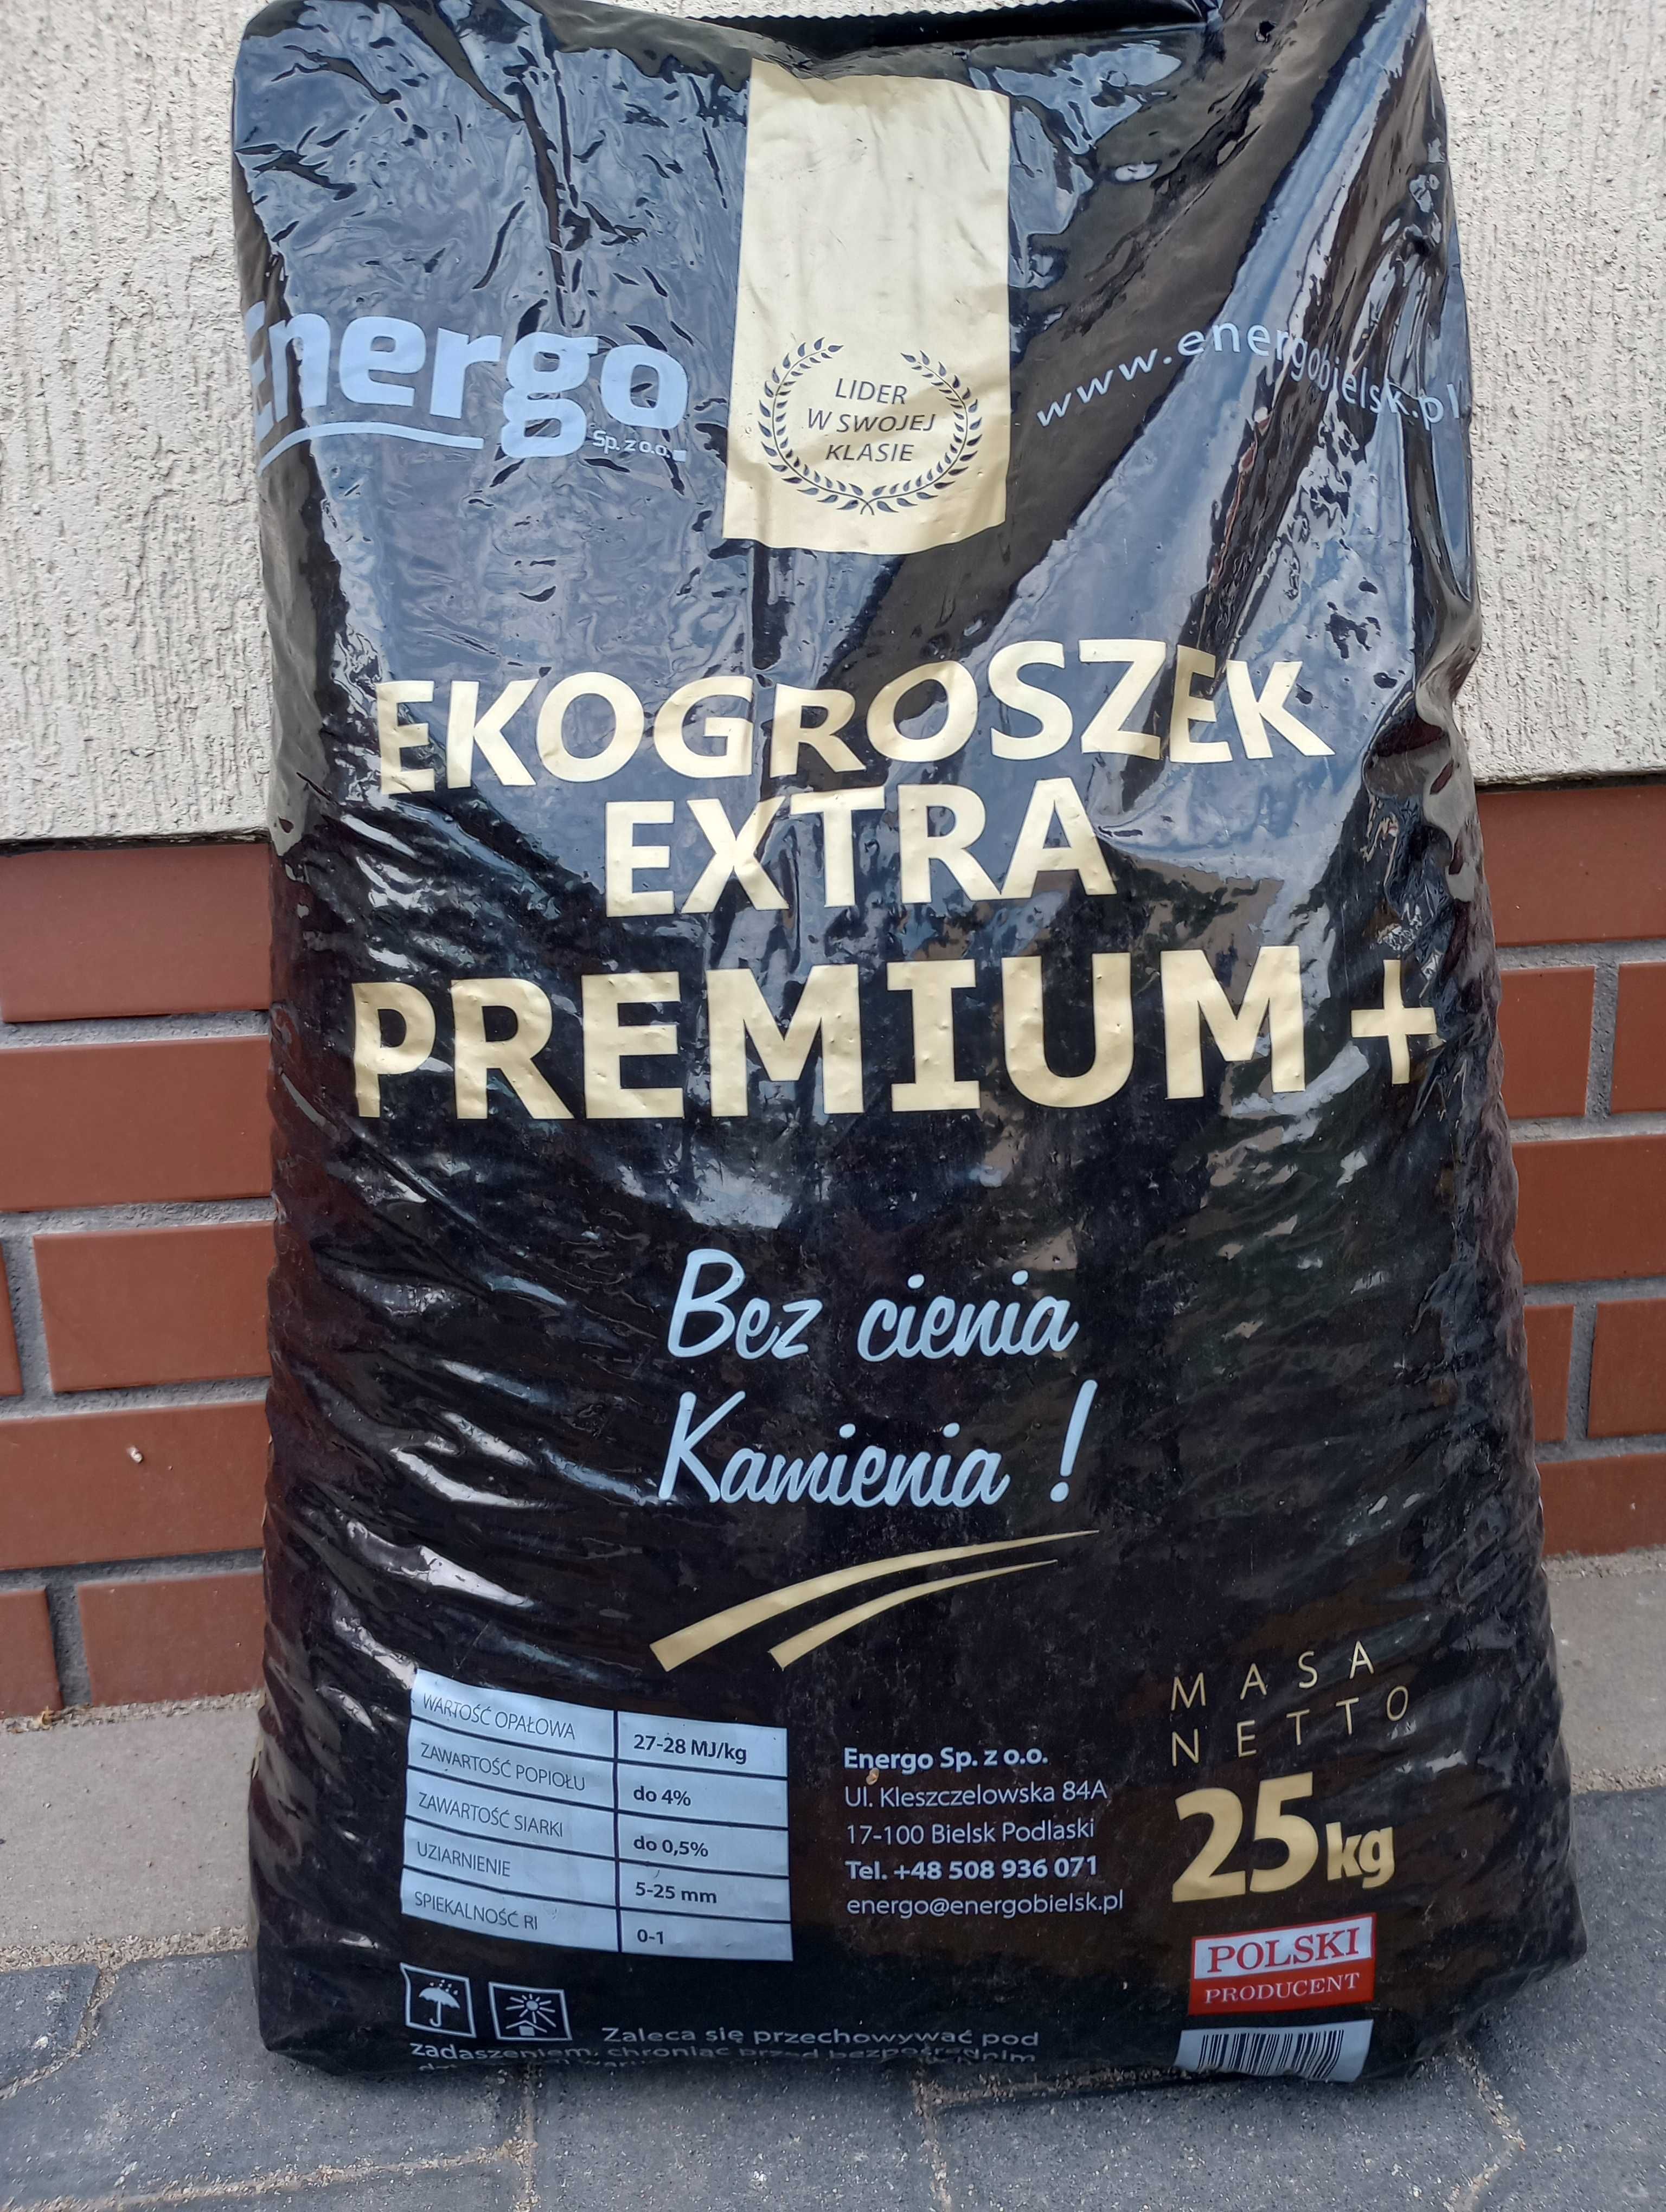 Ekogroszek EXTRA Premium +.Promocja do wyczerpania zapasów